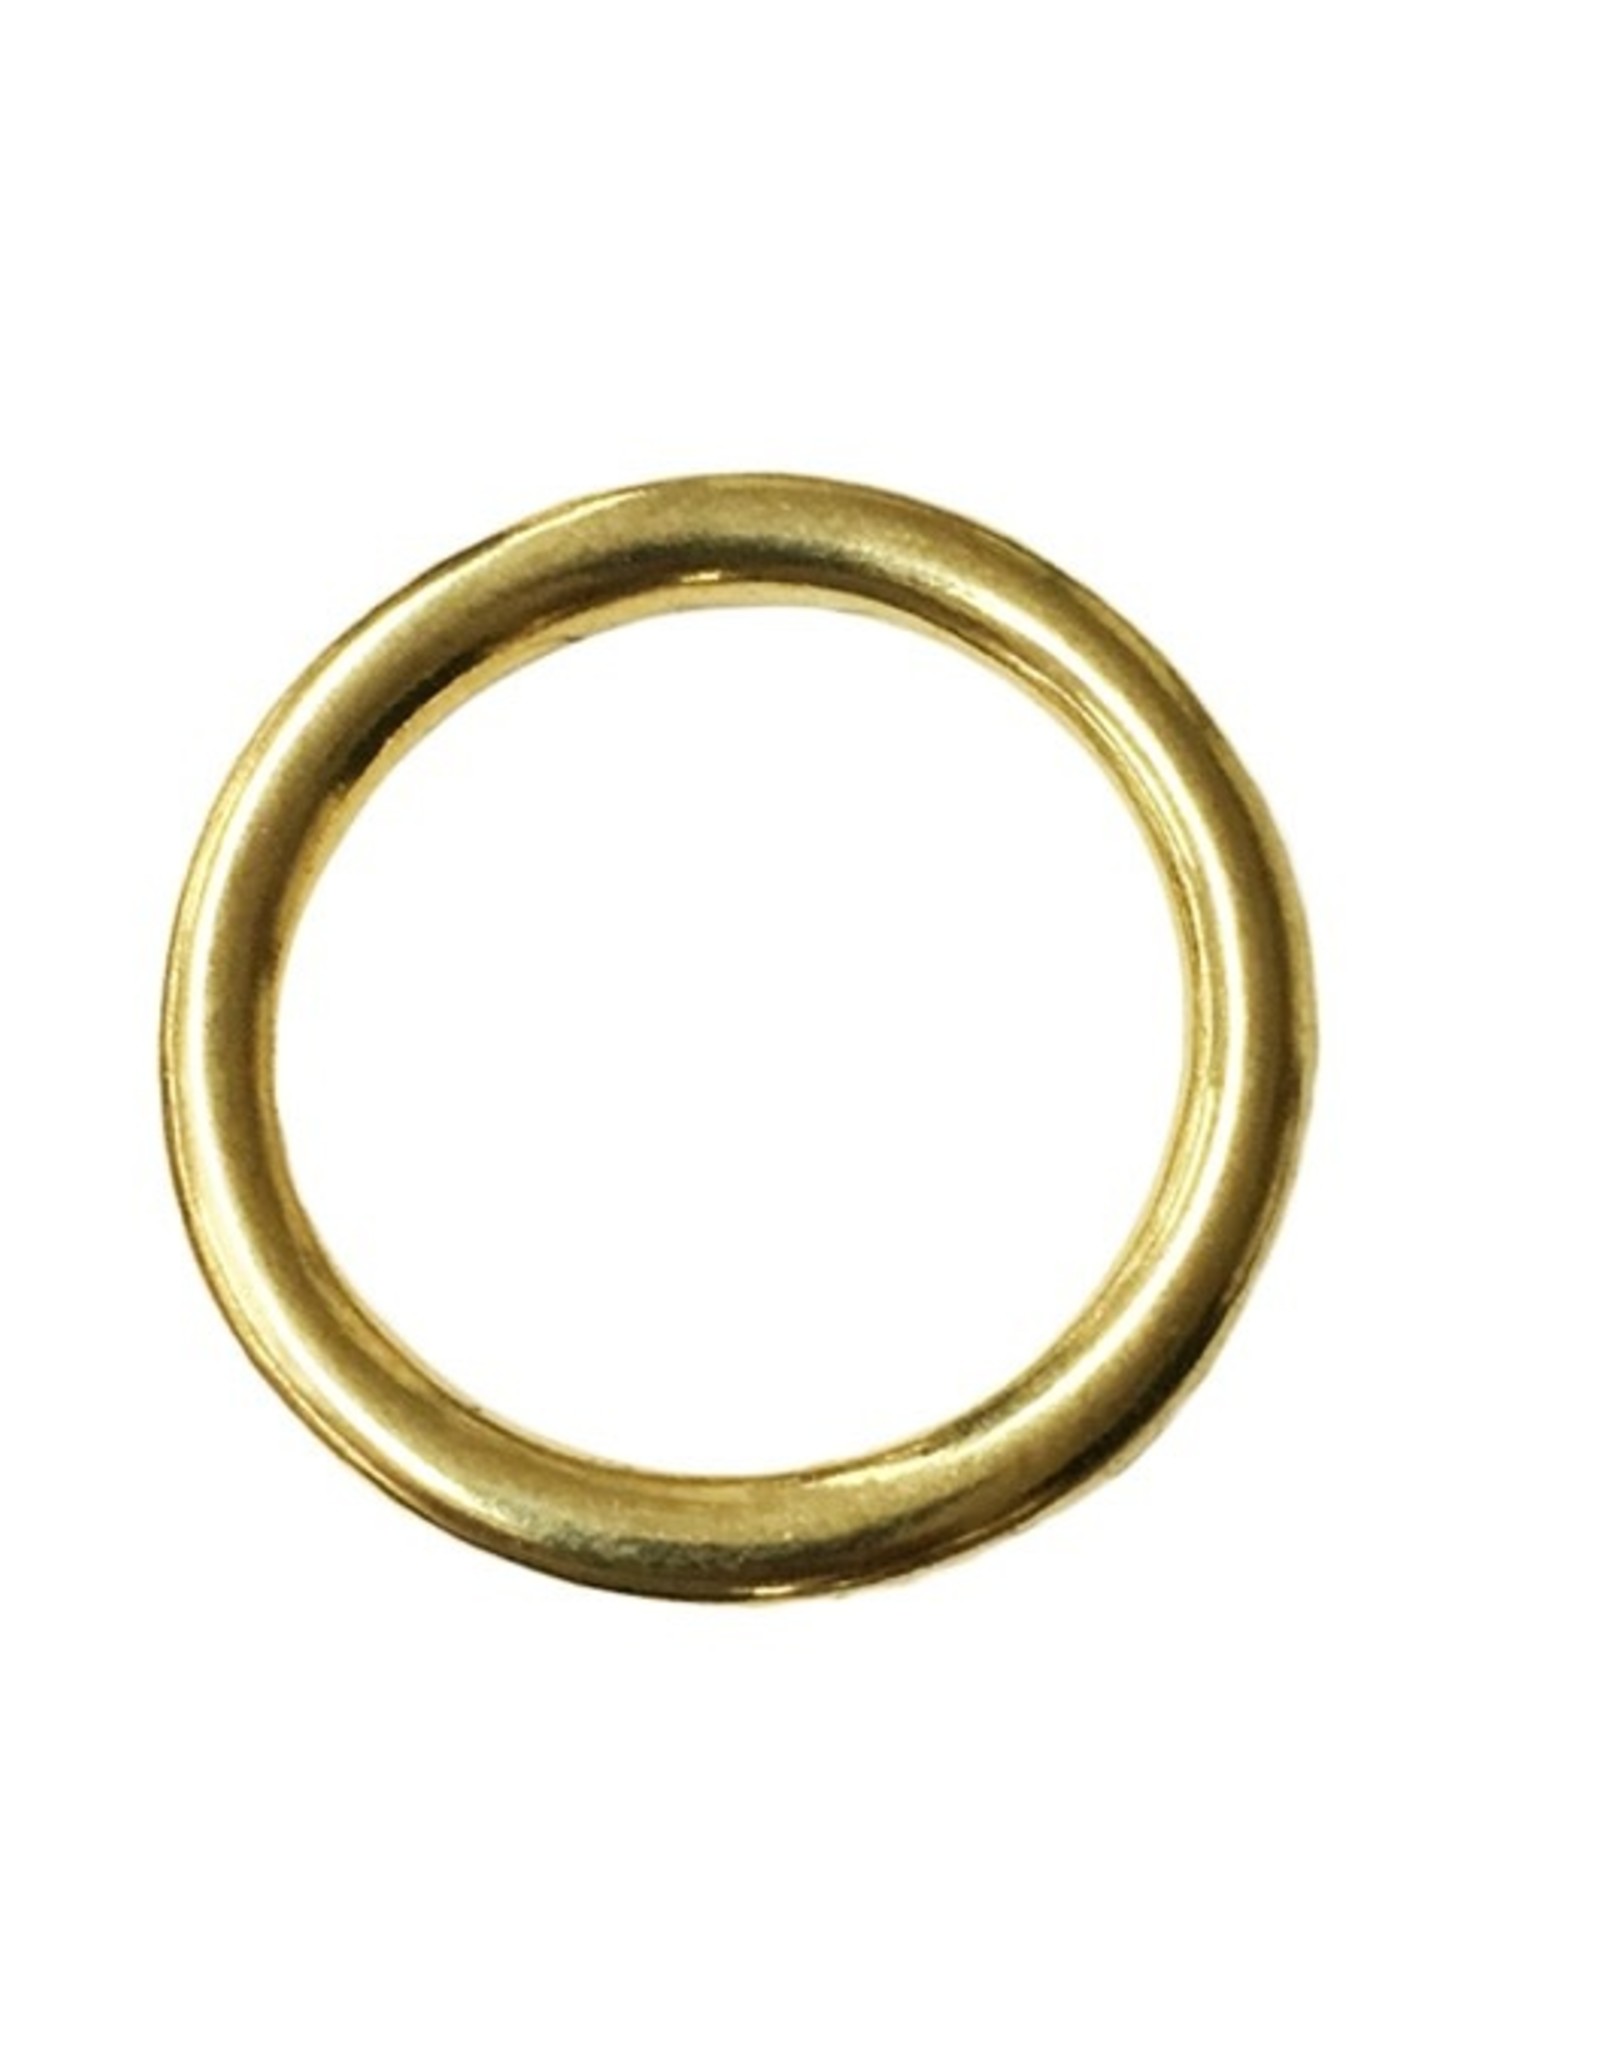 Halter Ring Solid Brass